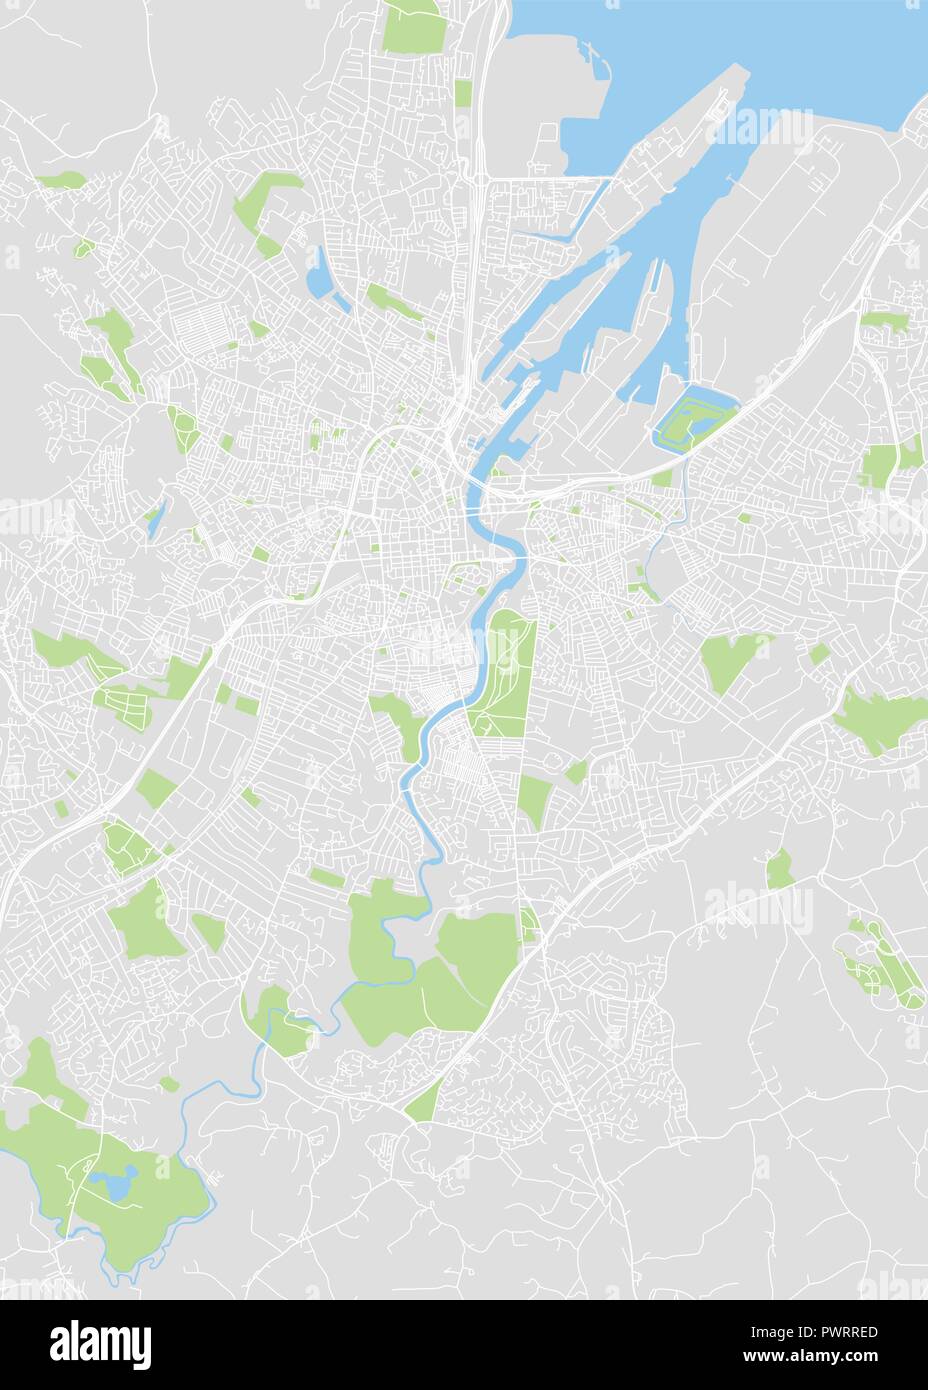 Vettore dettagliata mappa a colori di Belfast piano particolareggiato della città, fiumi e strade Illustrazione Vettoriale